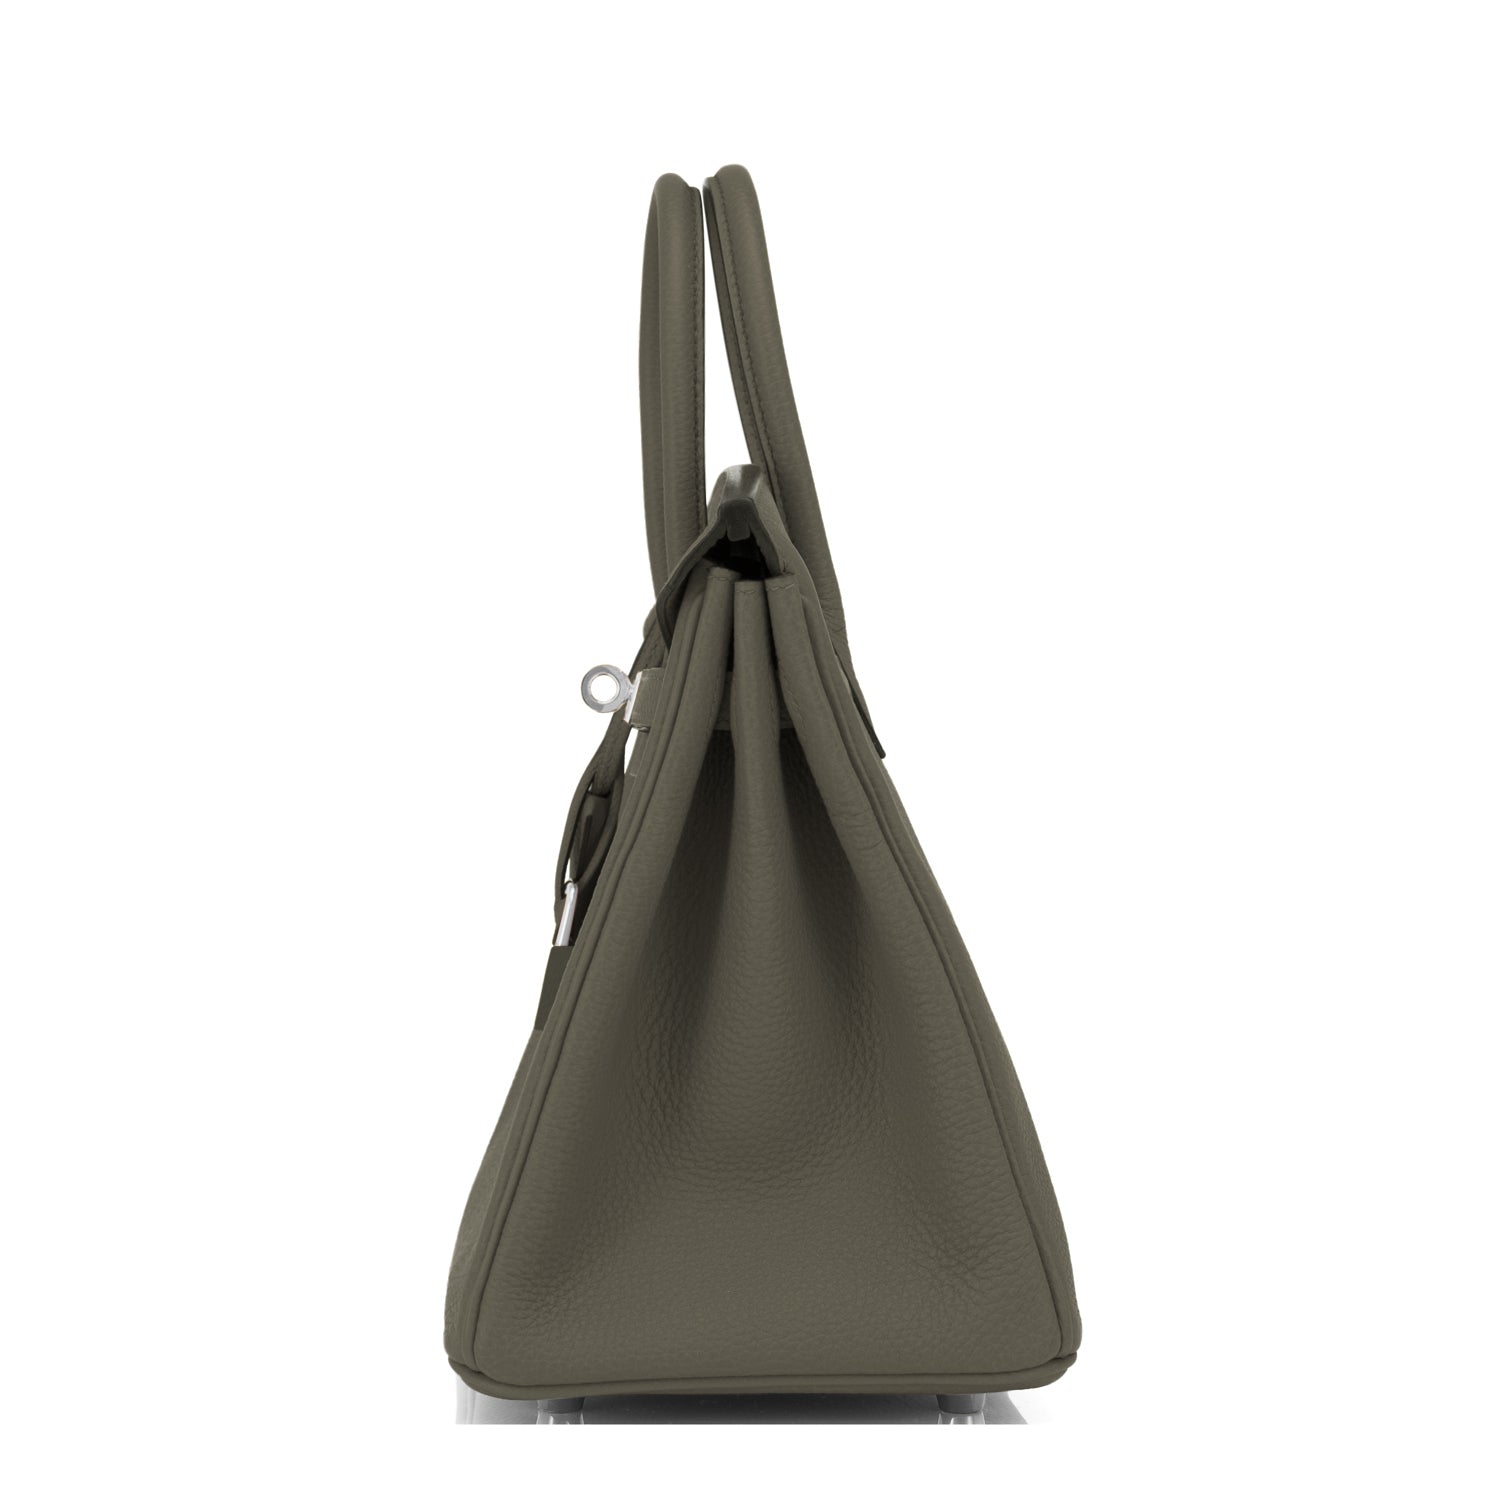 Hermes 35cm Vert Olive Togo Leather Birkin Bag with Gold Hardware